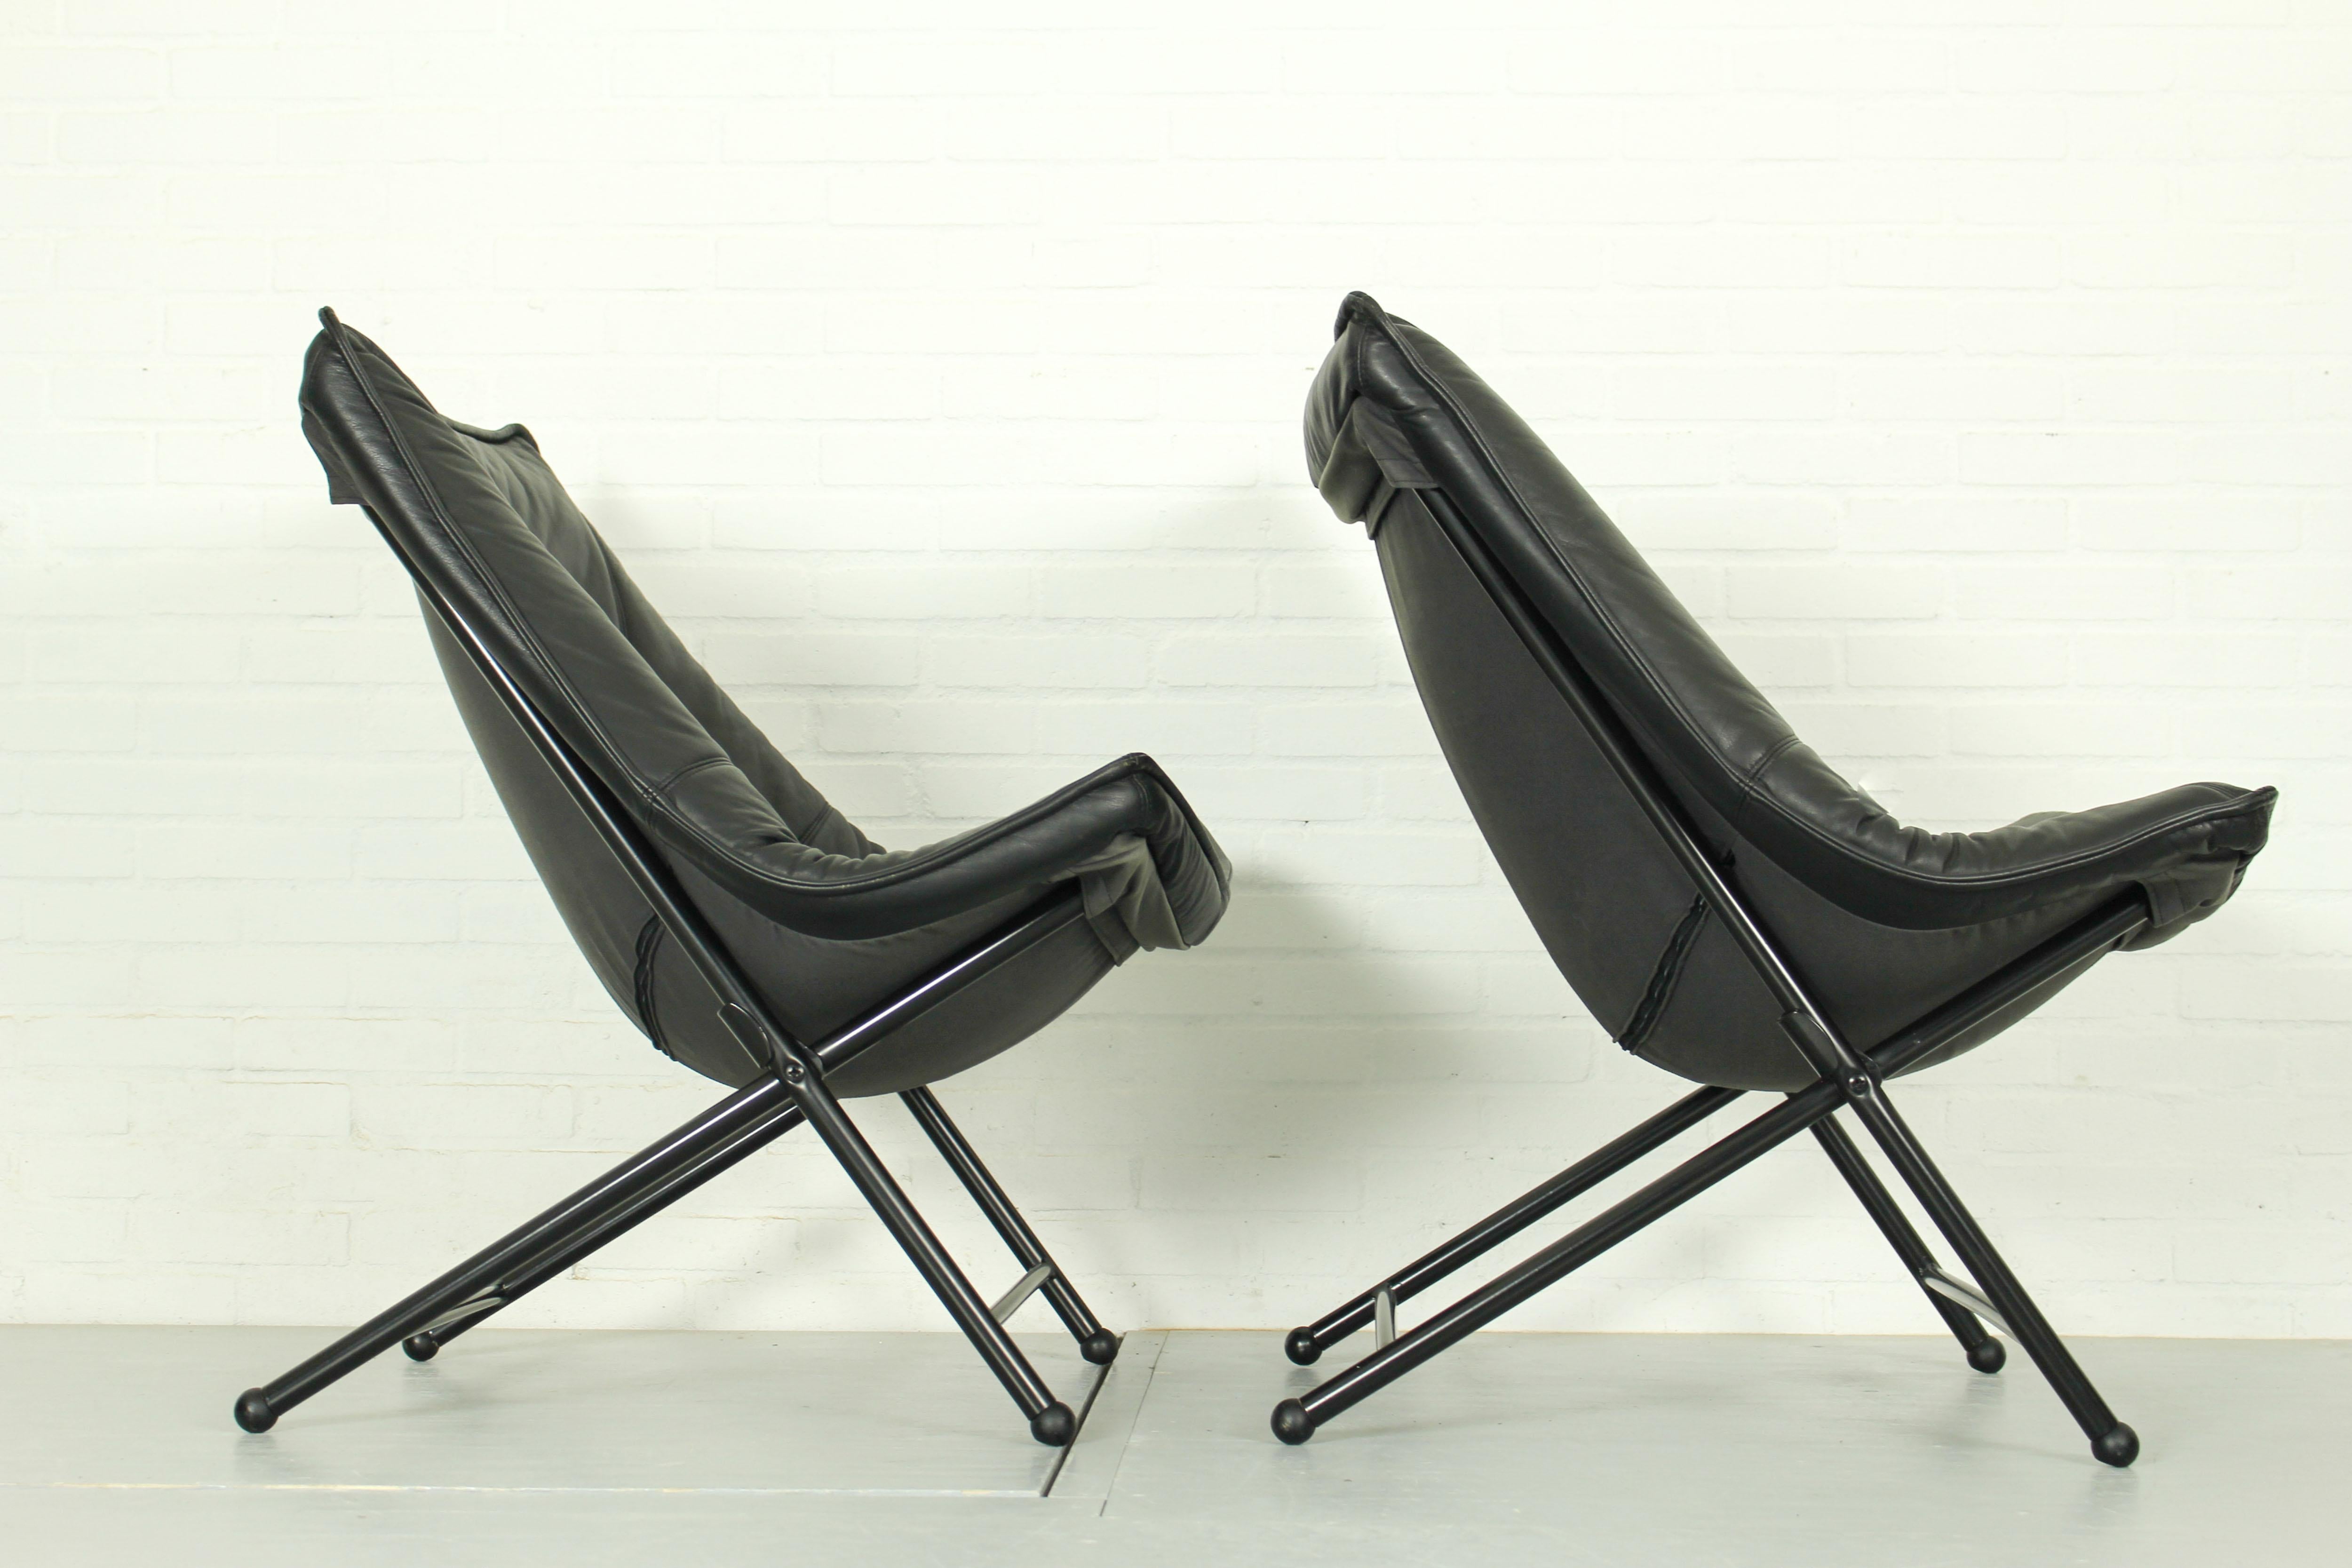 Ensemble de 2 chaises Easy Mid Century produites par Teun van Zanten pour Molinari dans les années 1970. Les chaises sont dotées d'un cadre tubulaire noir stable et d'un revêtement en cuir noir très confortable aux formes organiques. Les chaises